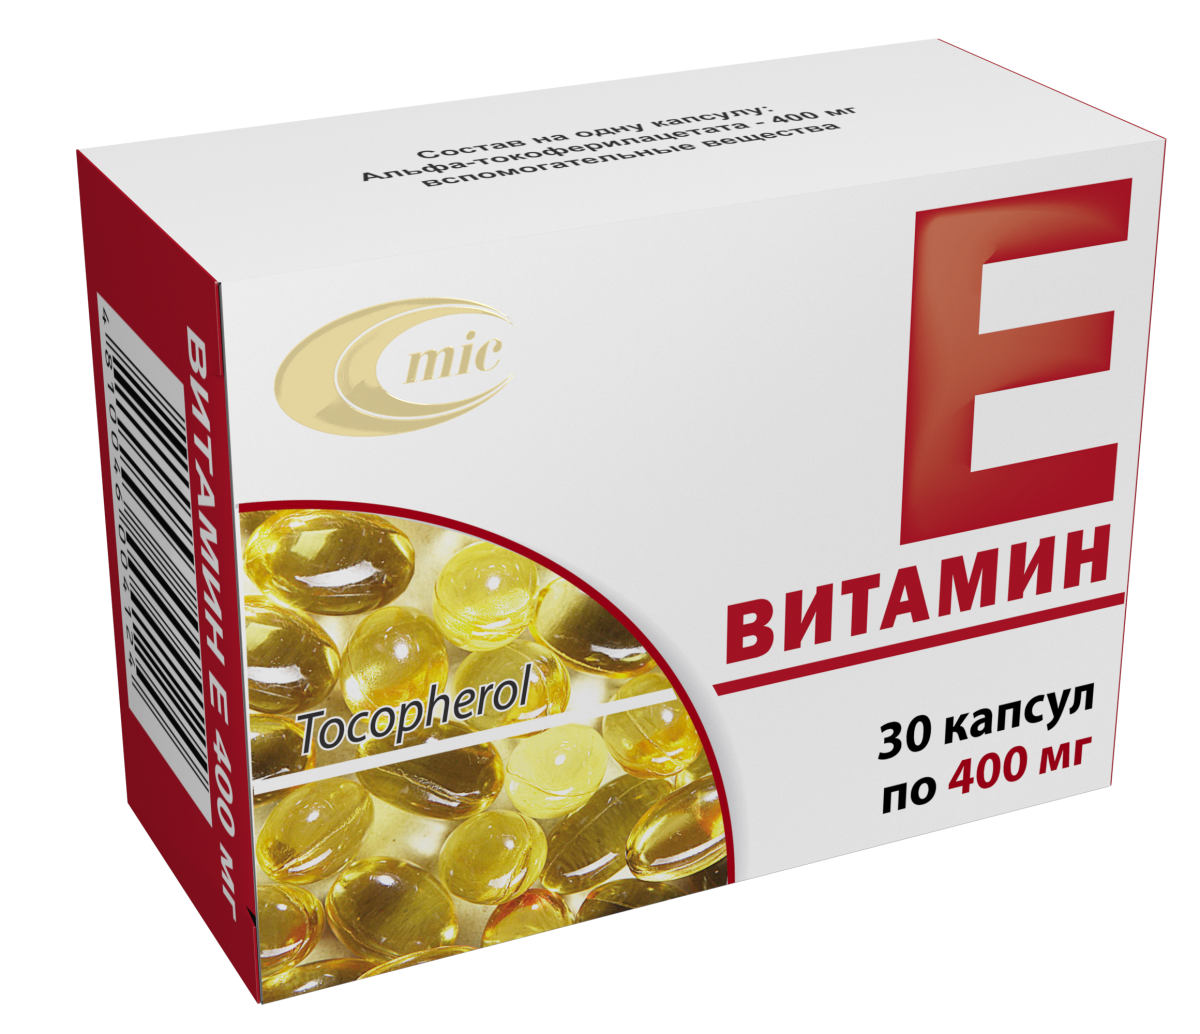 Vitamin d vitamin e. Витамин е капсулы 400мг 30. Витамин е капсулы 400 мг. Витамин е (капсулы 400 мг n30. Витамин е капс 400мг n30.